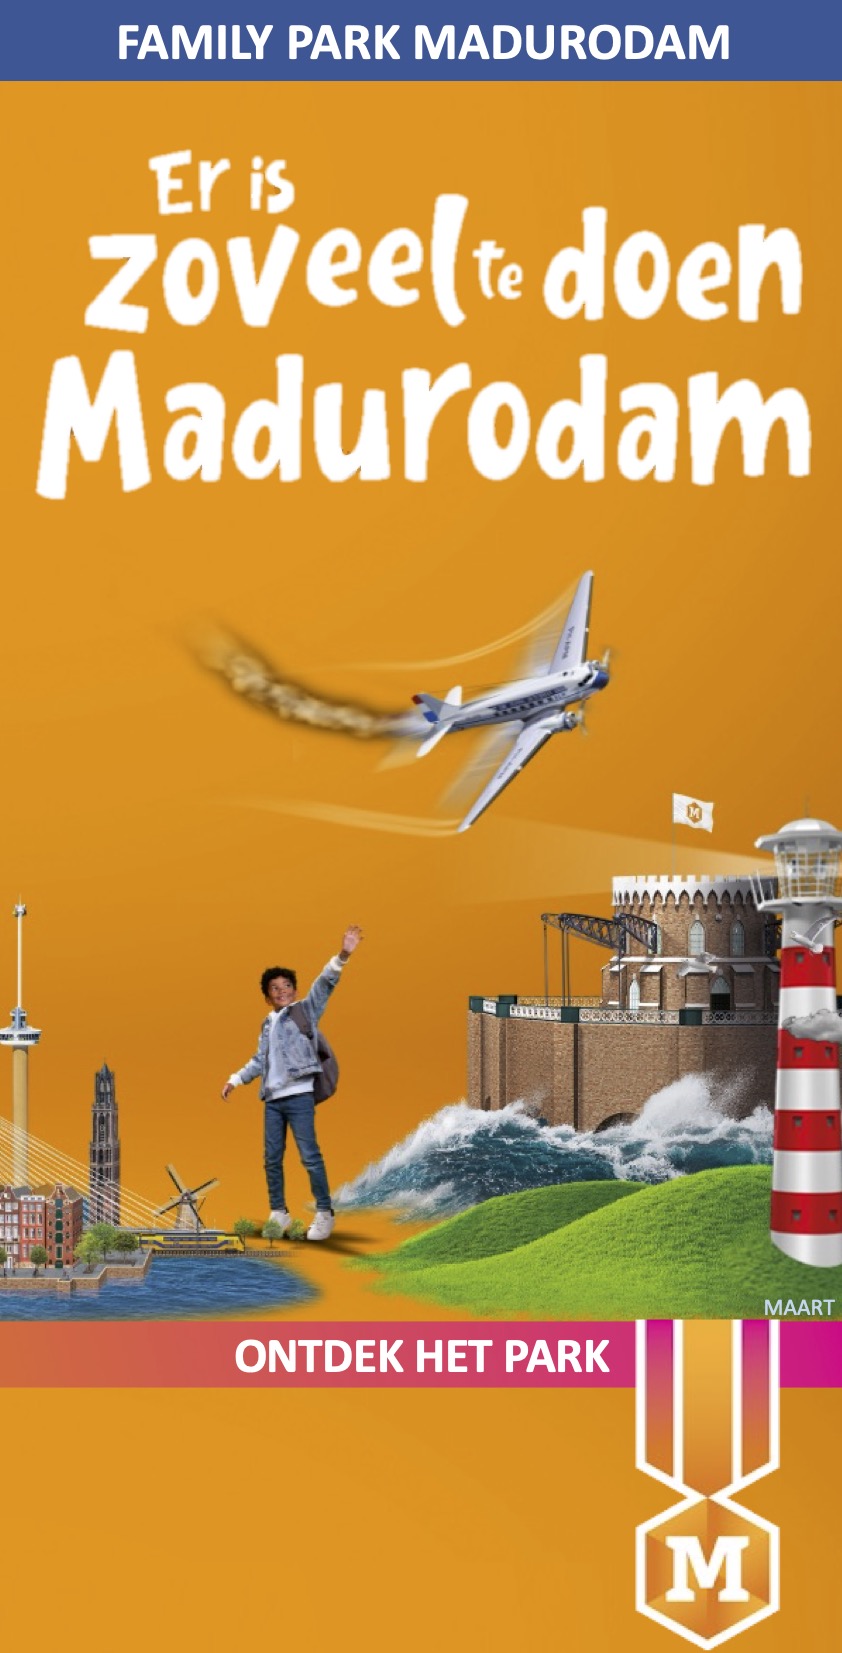 MAART Madurodam Scheveningen Helden en hoogtepunten van Nederland Ontdek waar een klein land groot in is!